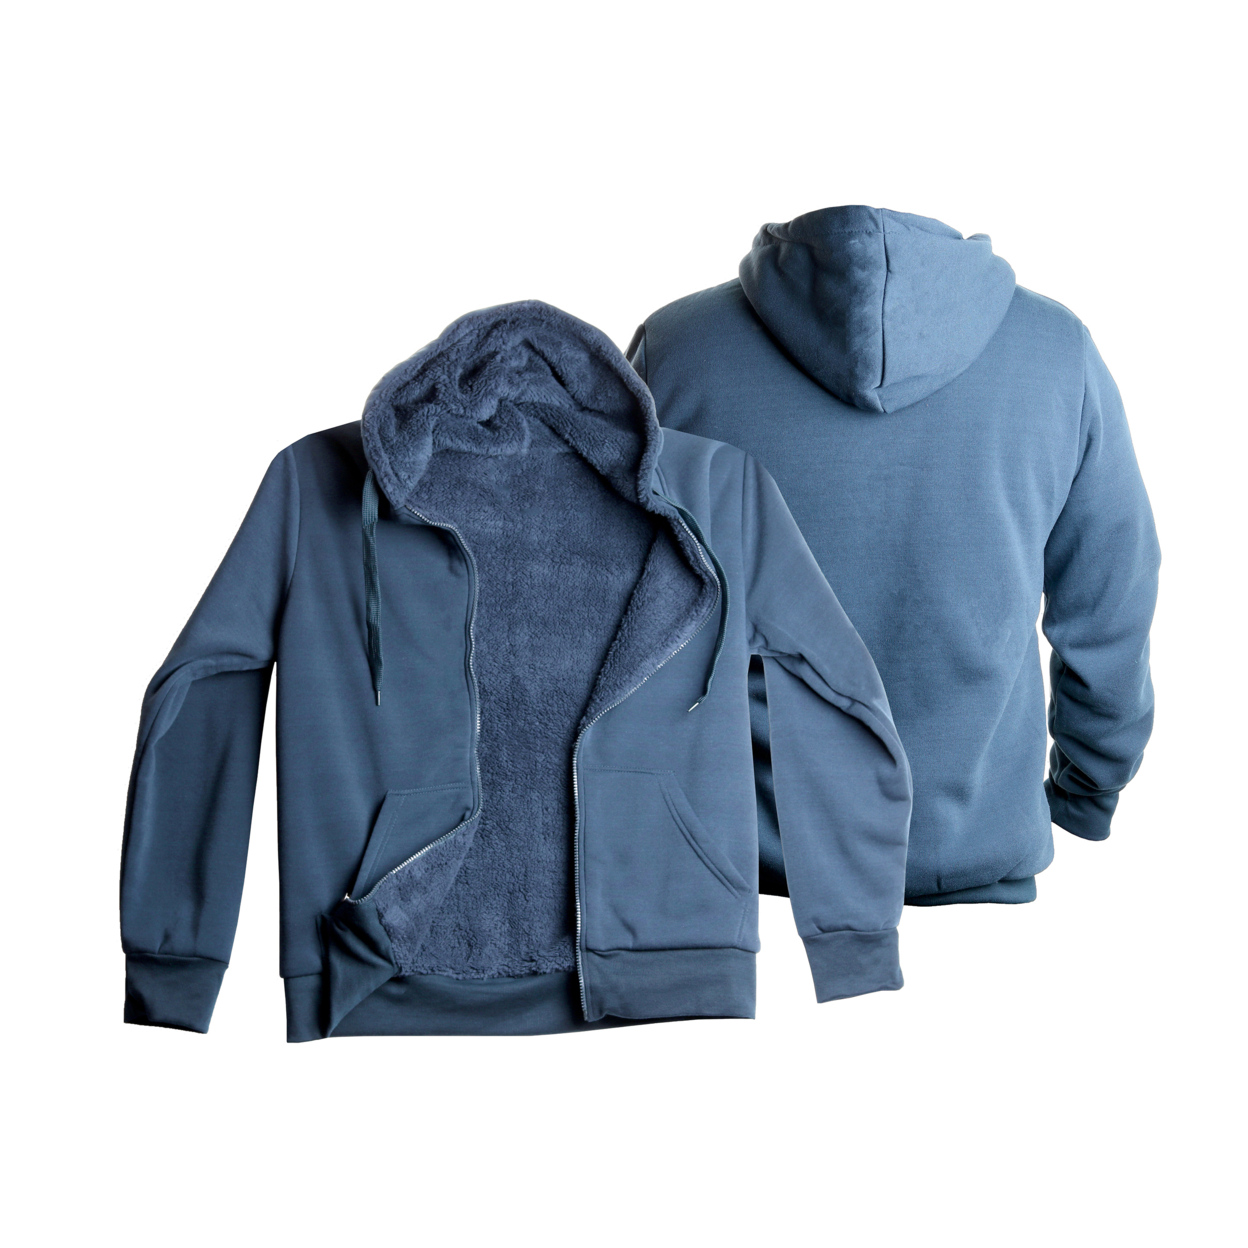 Men's Heavyweight Sherpa-Lined Fleece Hoodies - Blue, XX-Large